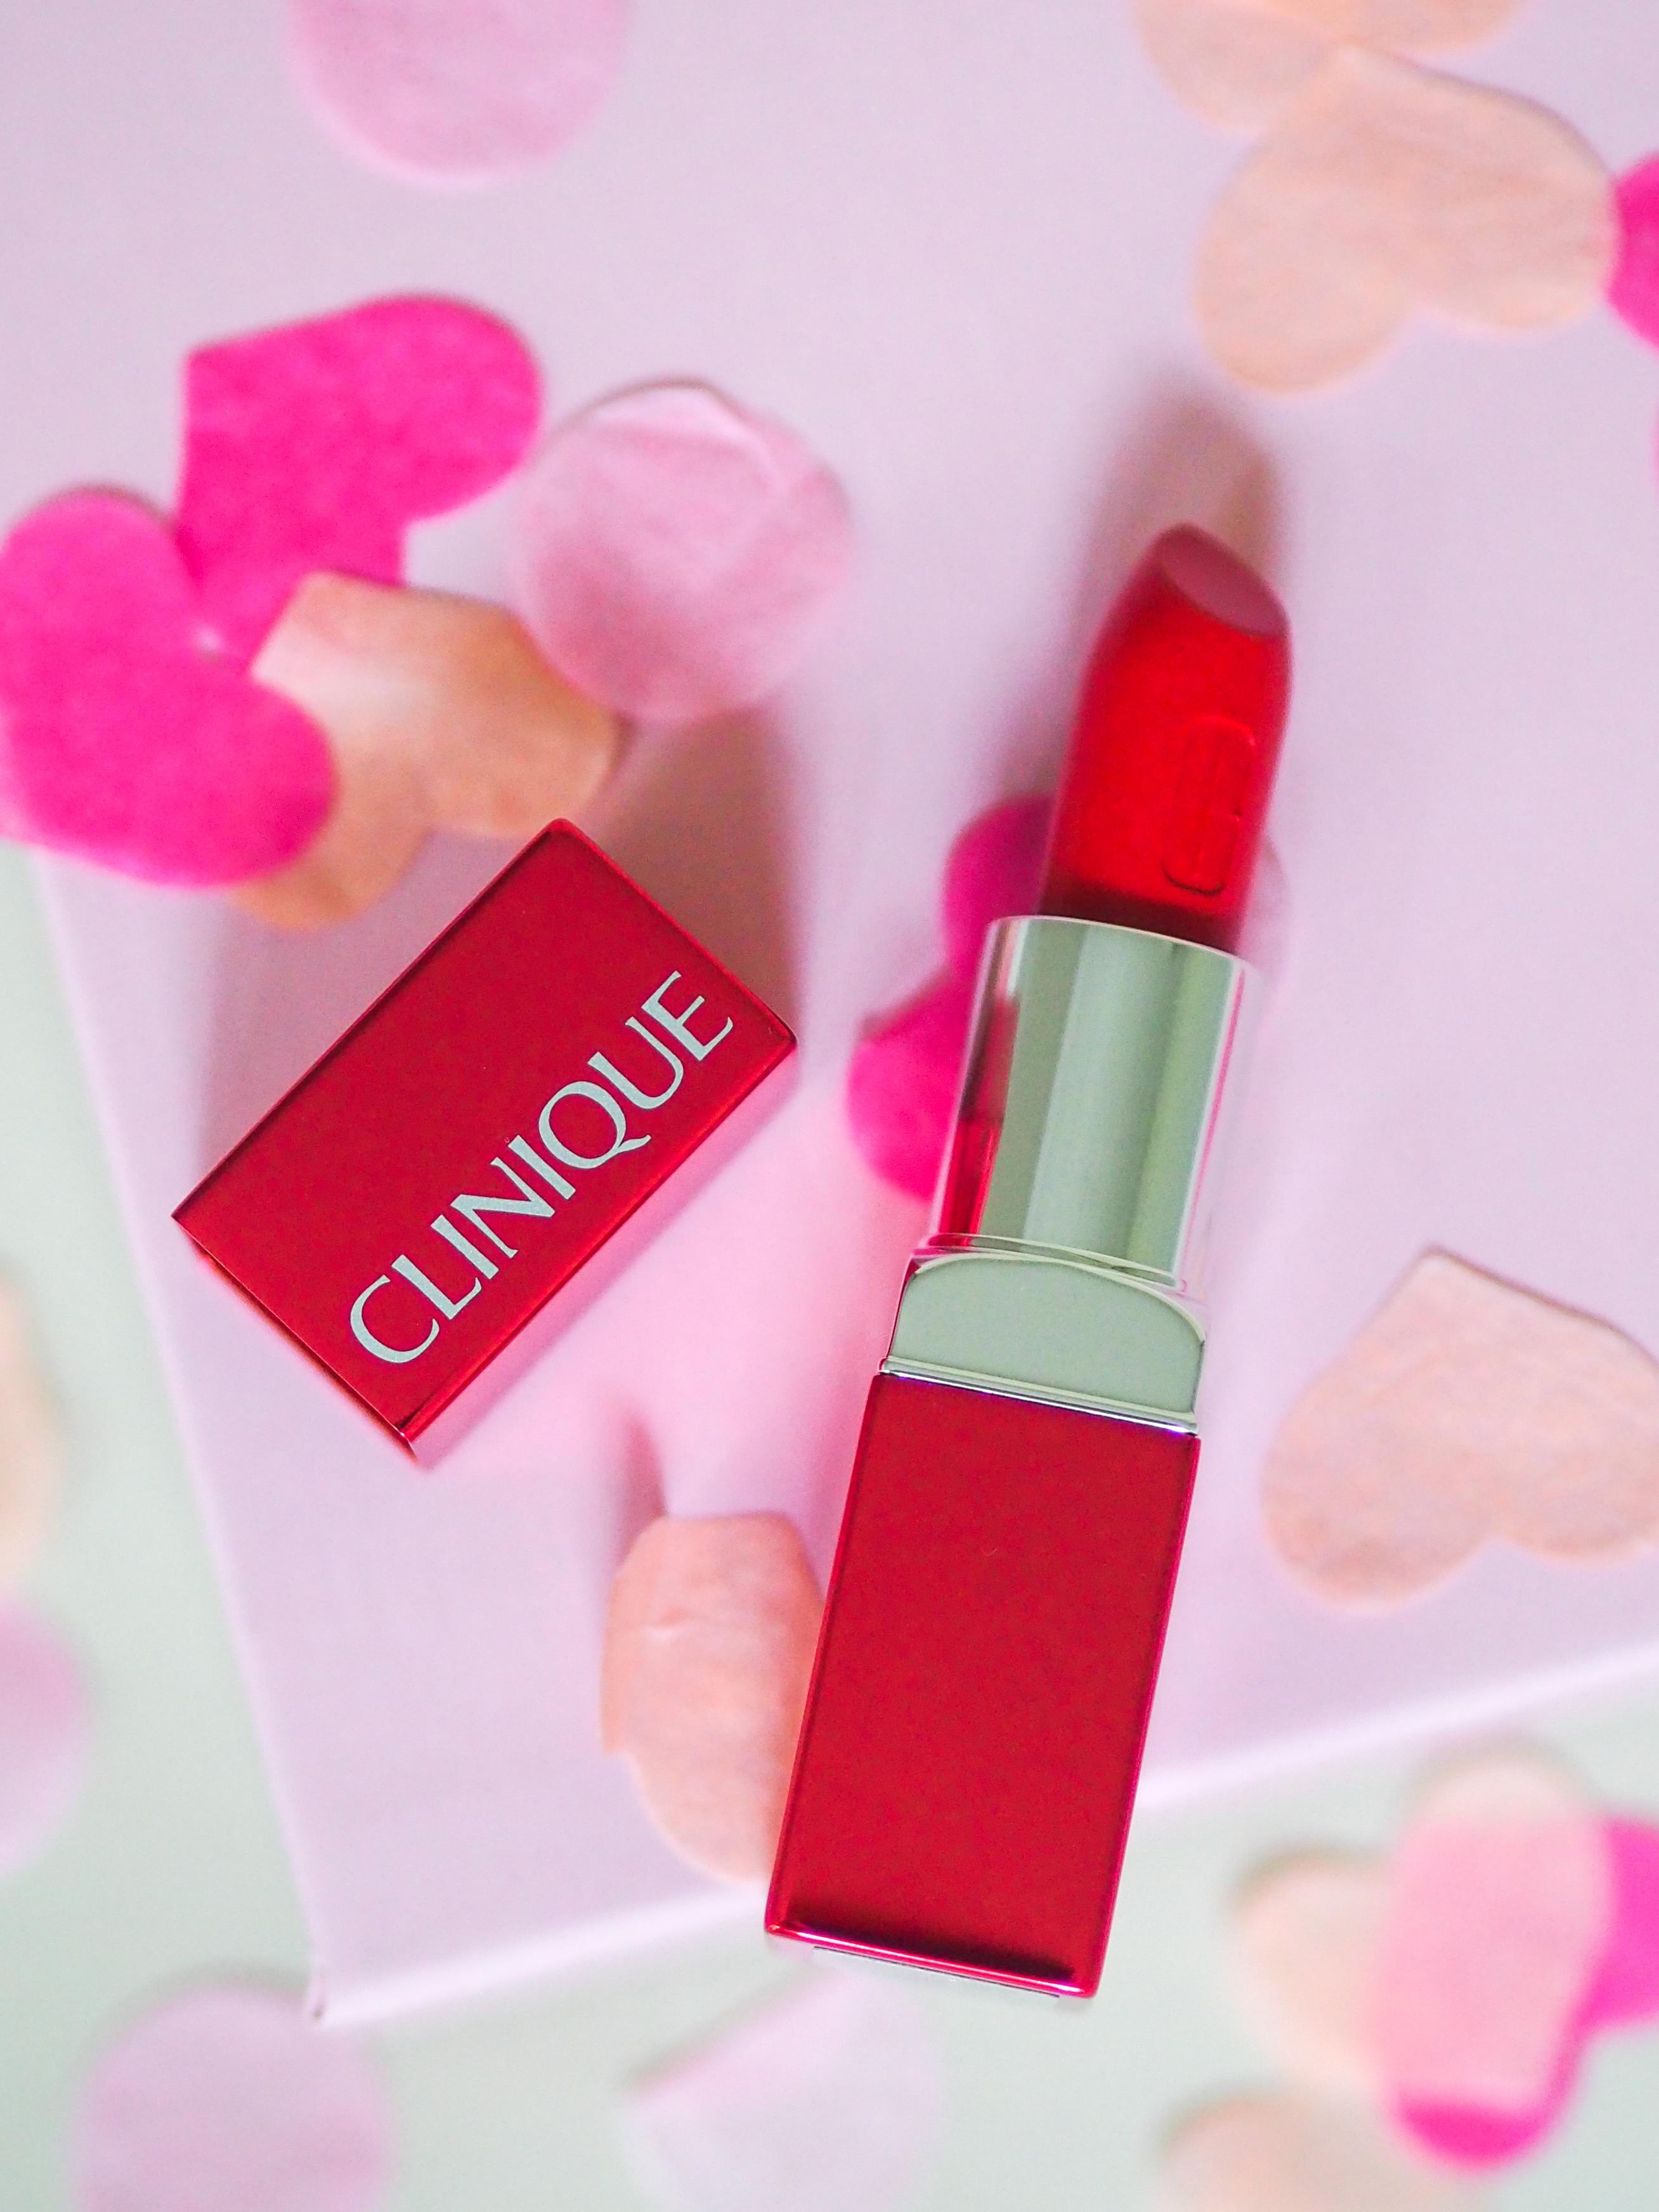 Perfekt für unterwegs: der #Clinique Pop Reds eignet sich für Lippen und Wangen #beautylieblinge
